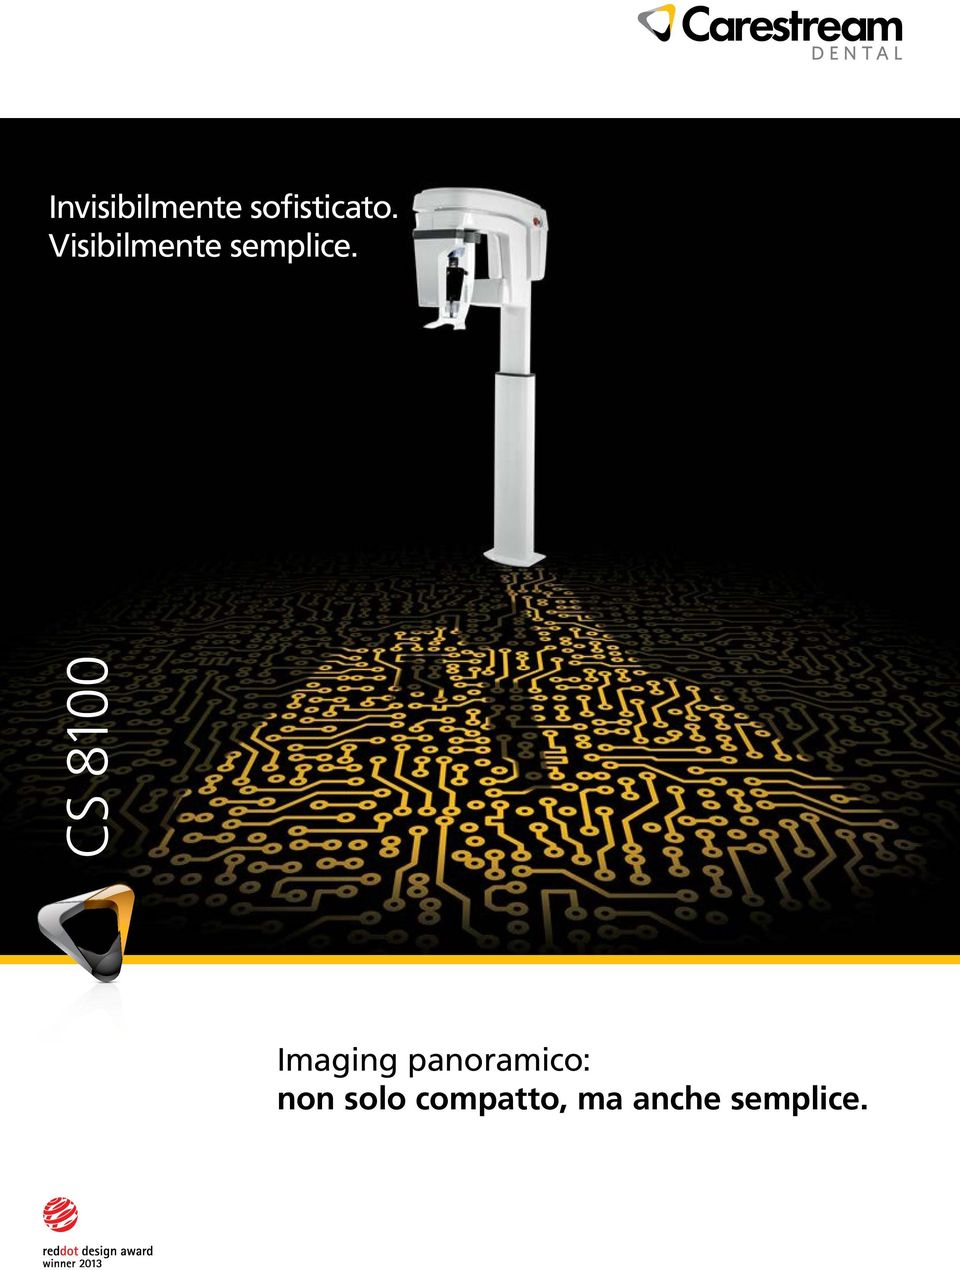 CS 8100 Imaging panoramico: